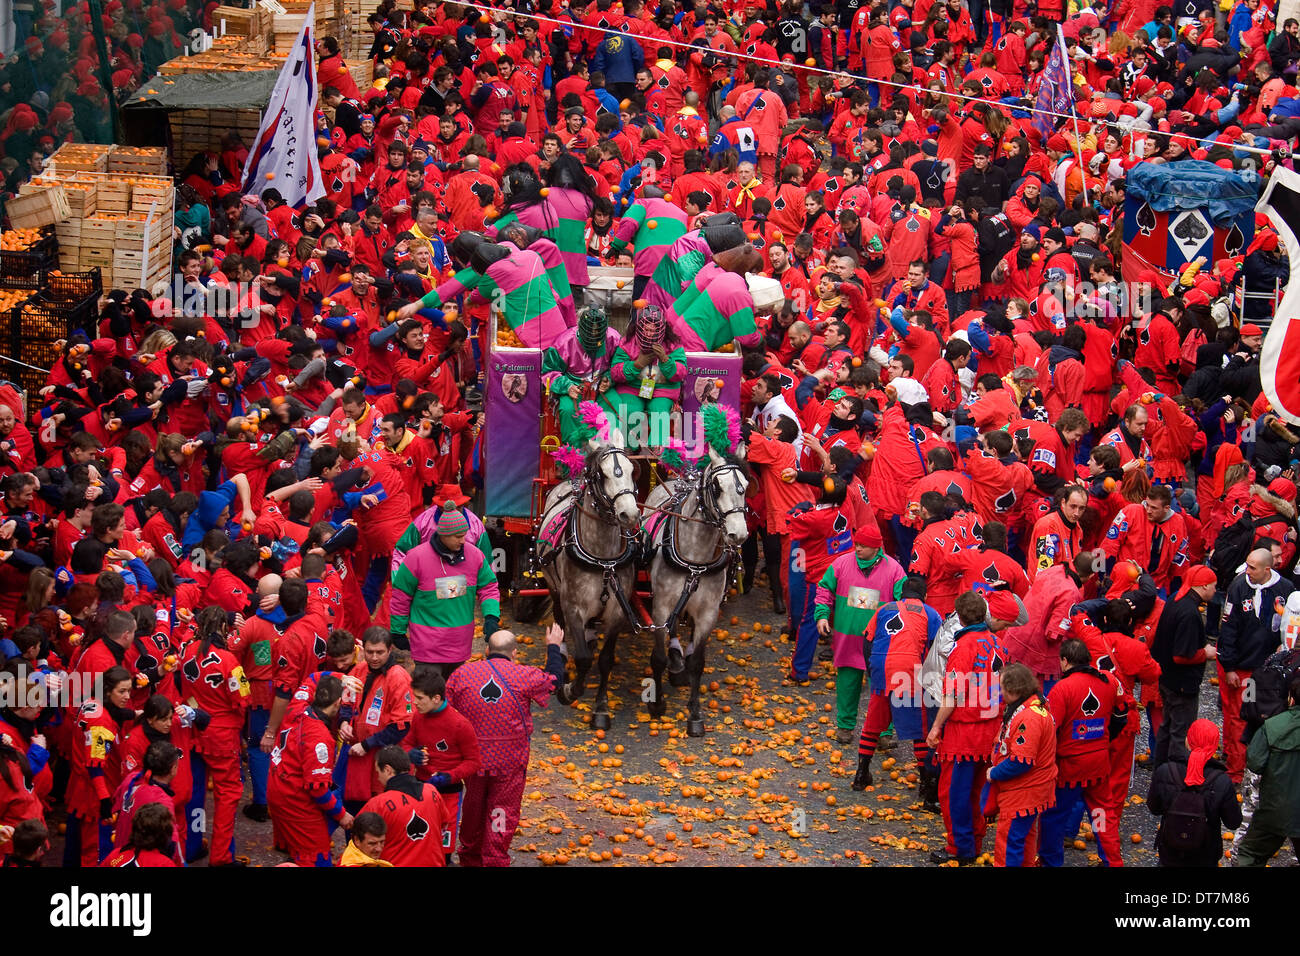 Ivrea Carnival, Italy. Stock Photo